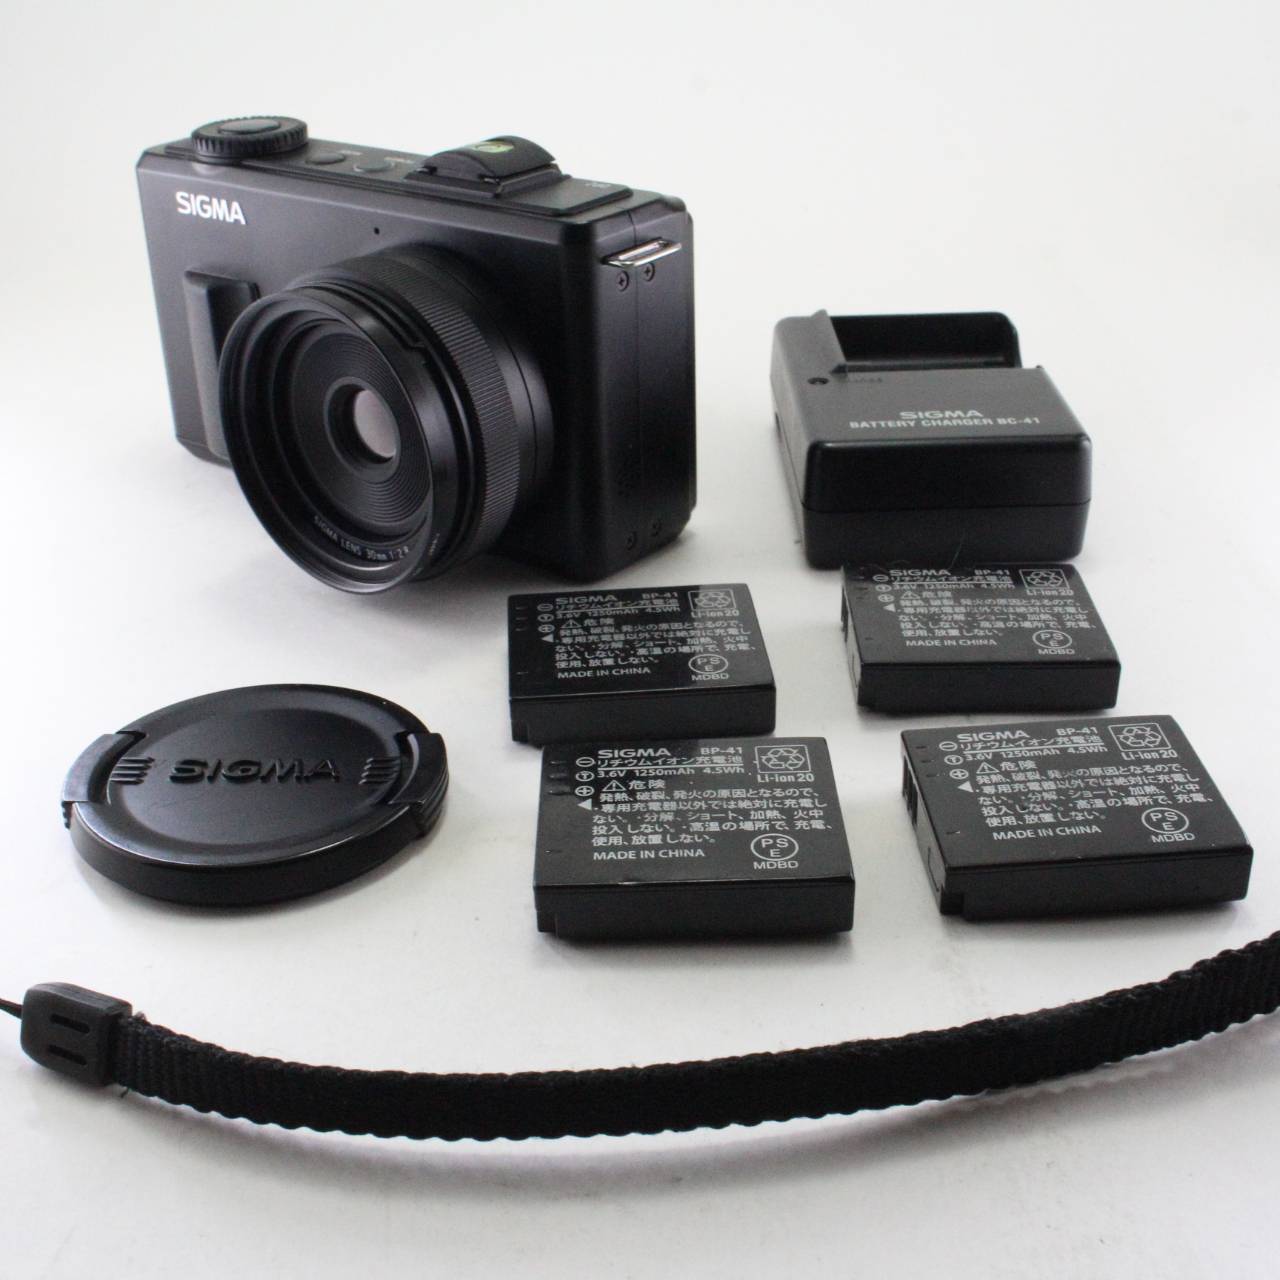 【中古】SIGMA デジタルカメラ DP2Merrill 4,600万画素 FoveonX3ダイレクトイメージセンサー(APS-C)搭載 929121